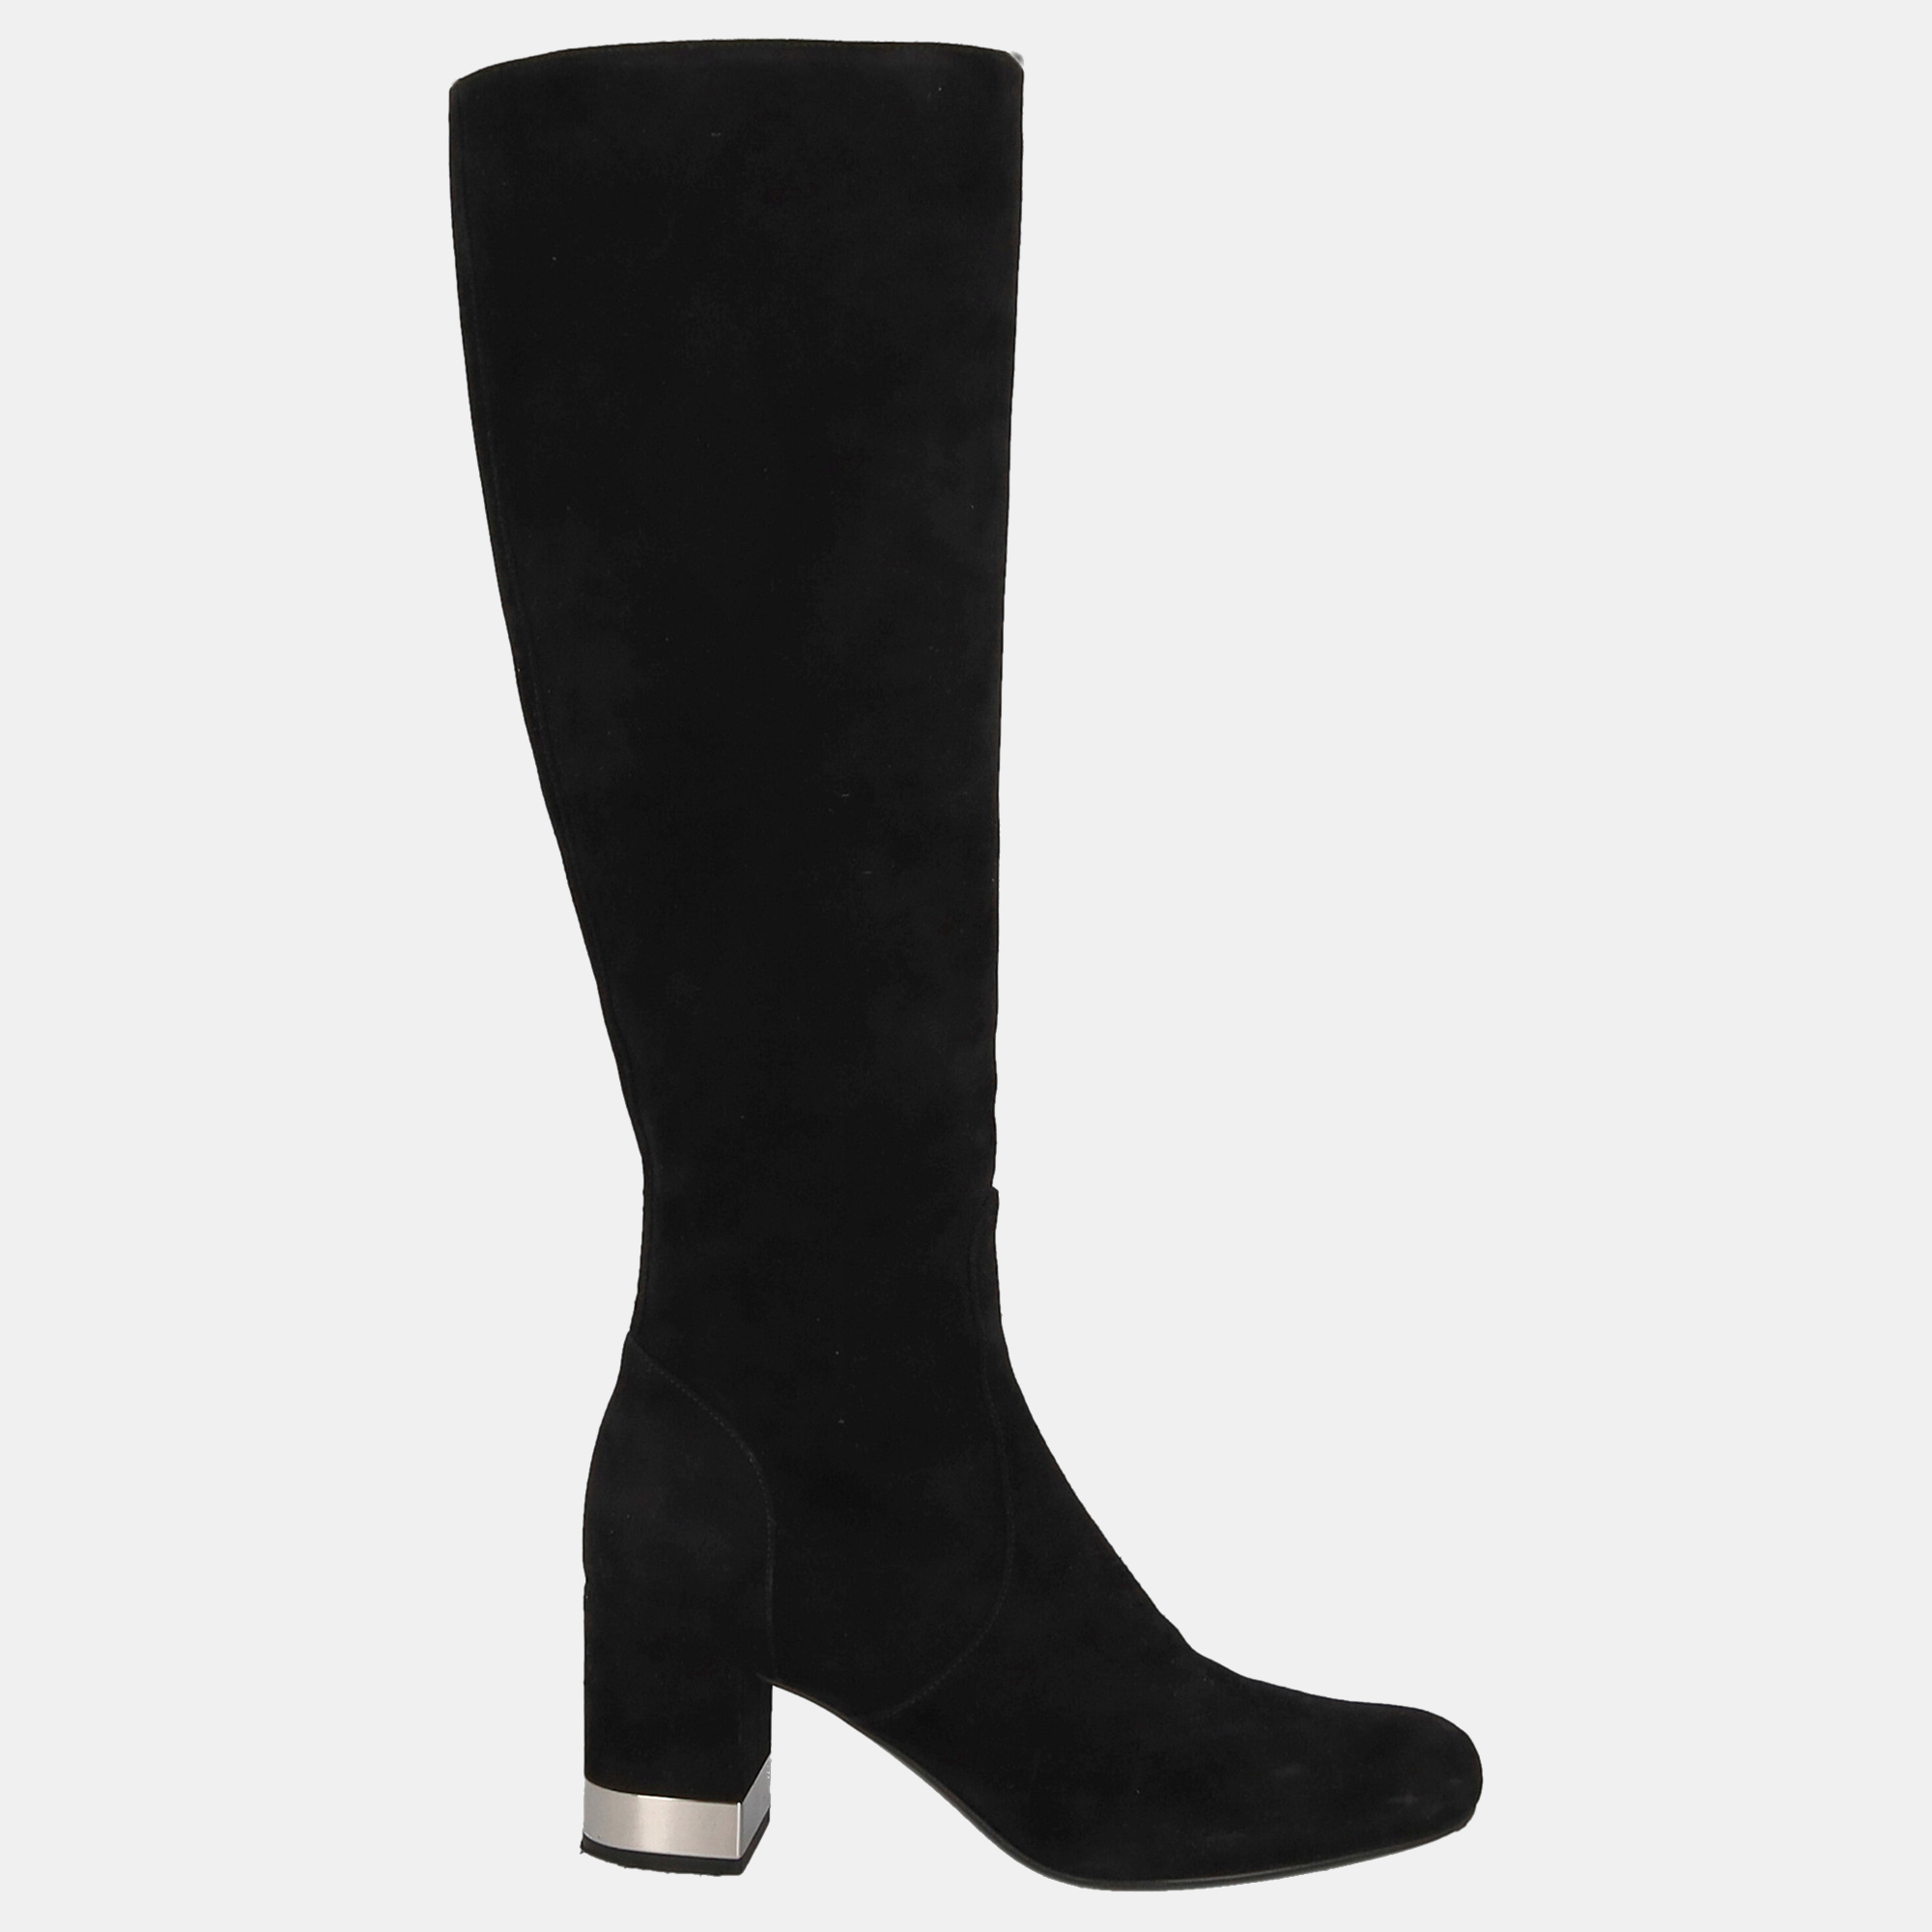 Saint Laurent  Women's Leather Boots - Black - EU 37